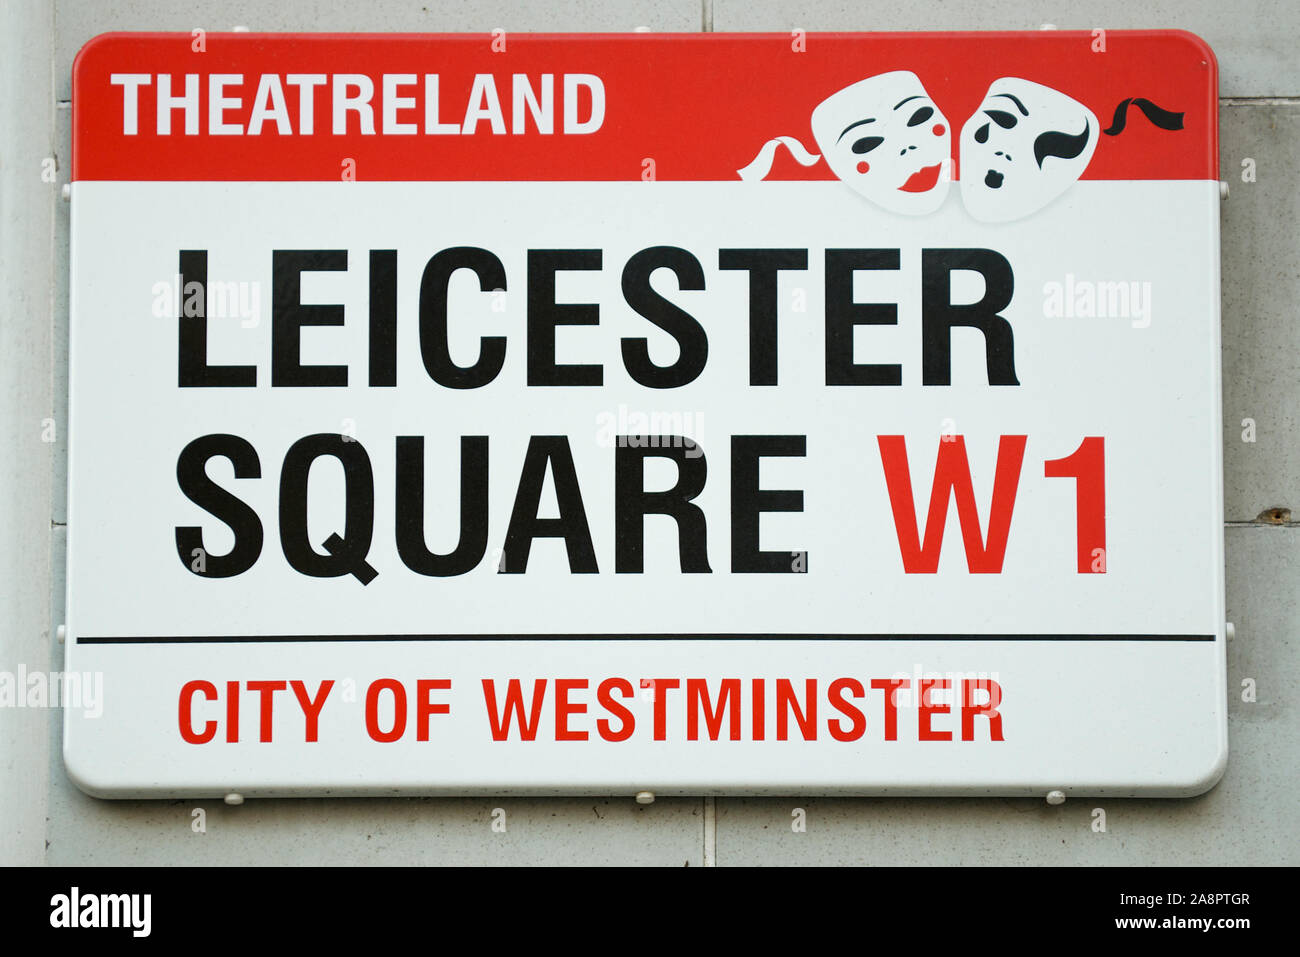 Londres - 29 DE SEPTIEMBRE de 2011: El signo rojo y negro de la ciudad de Westminster para Leicester Square presenta una designación de Theaterland con máscaras teatrales. Foto de stock